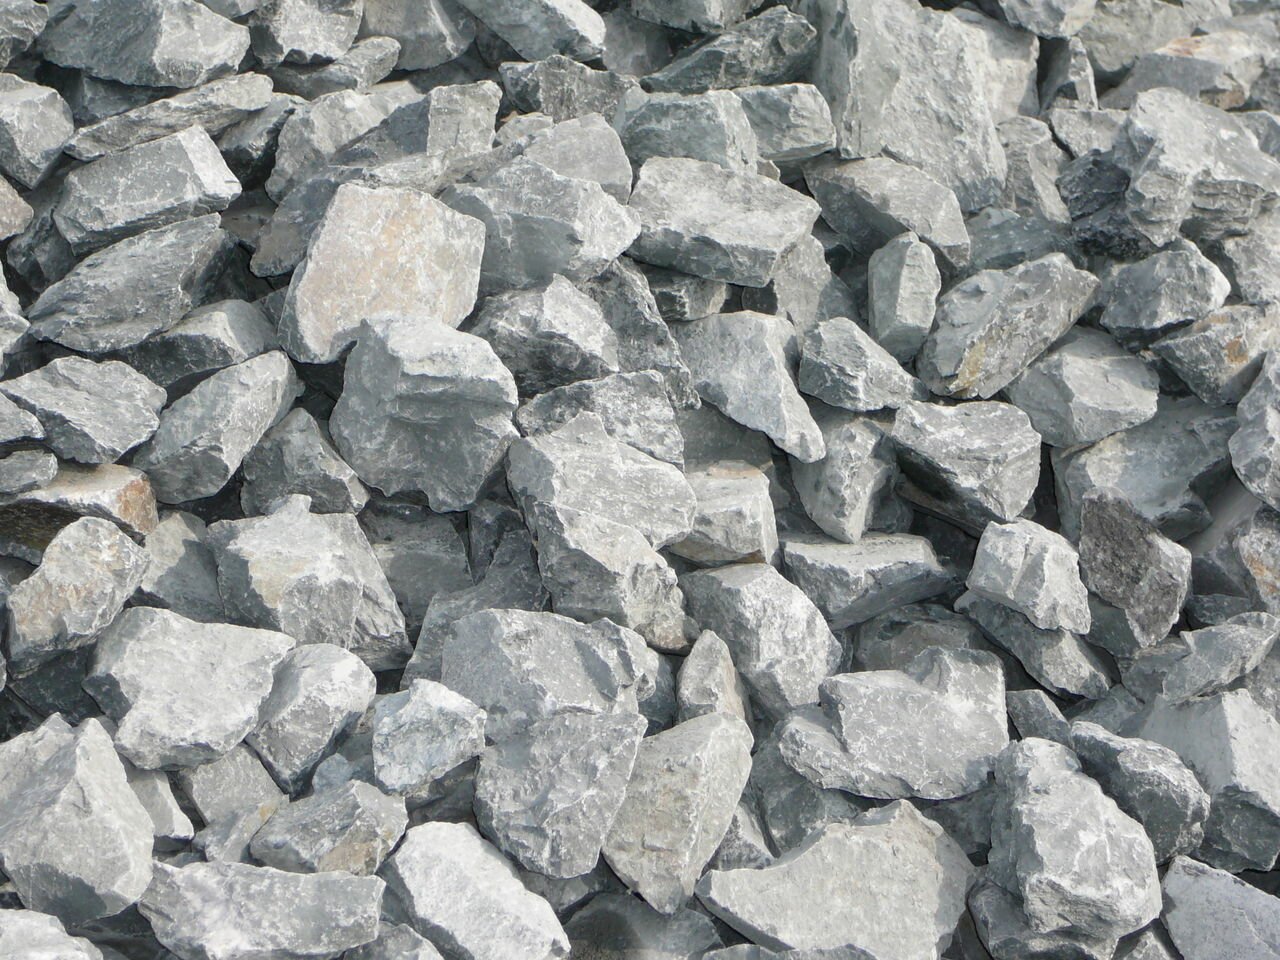 Гранитный щебень из бутового камня фракции 70-150 мм: область применения иглавные преимущества